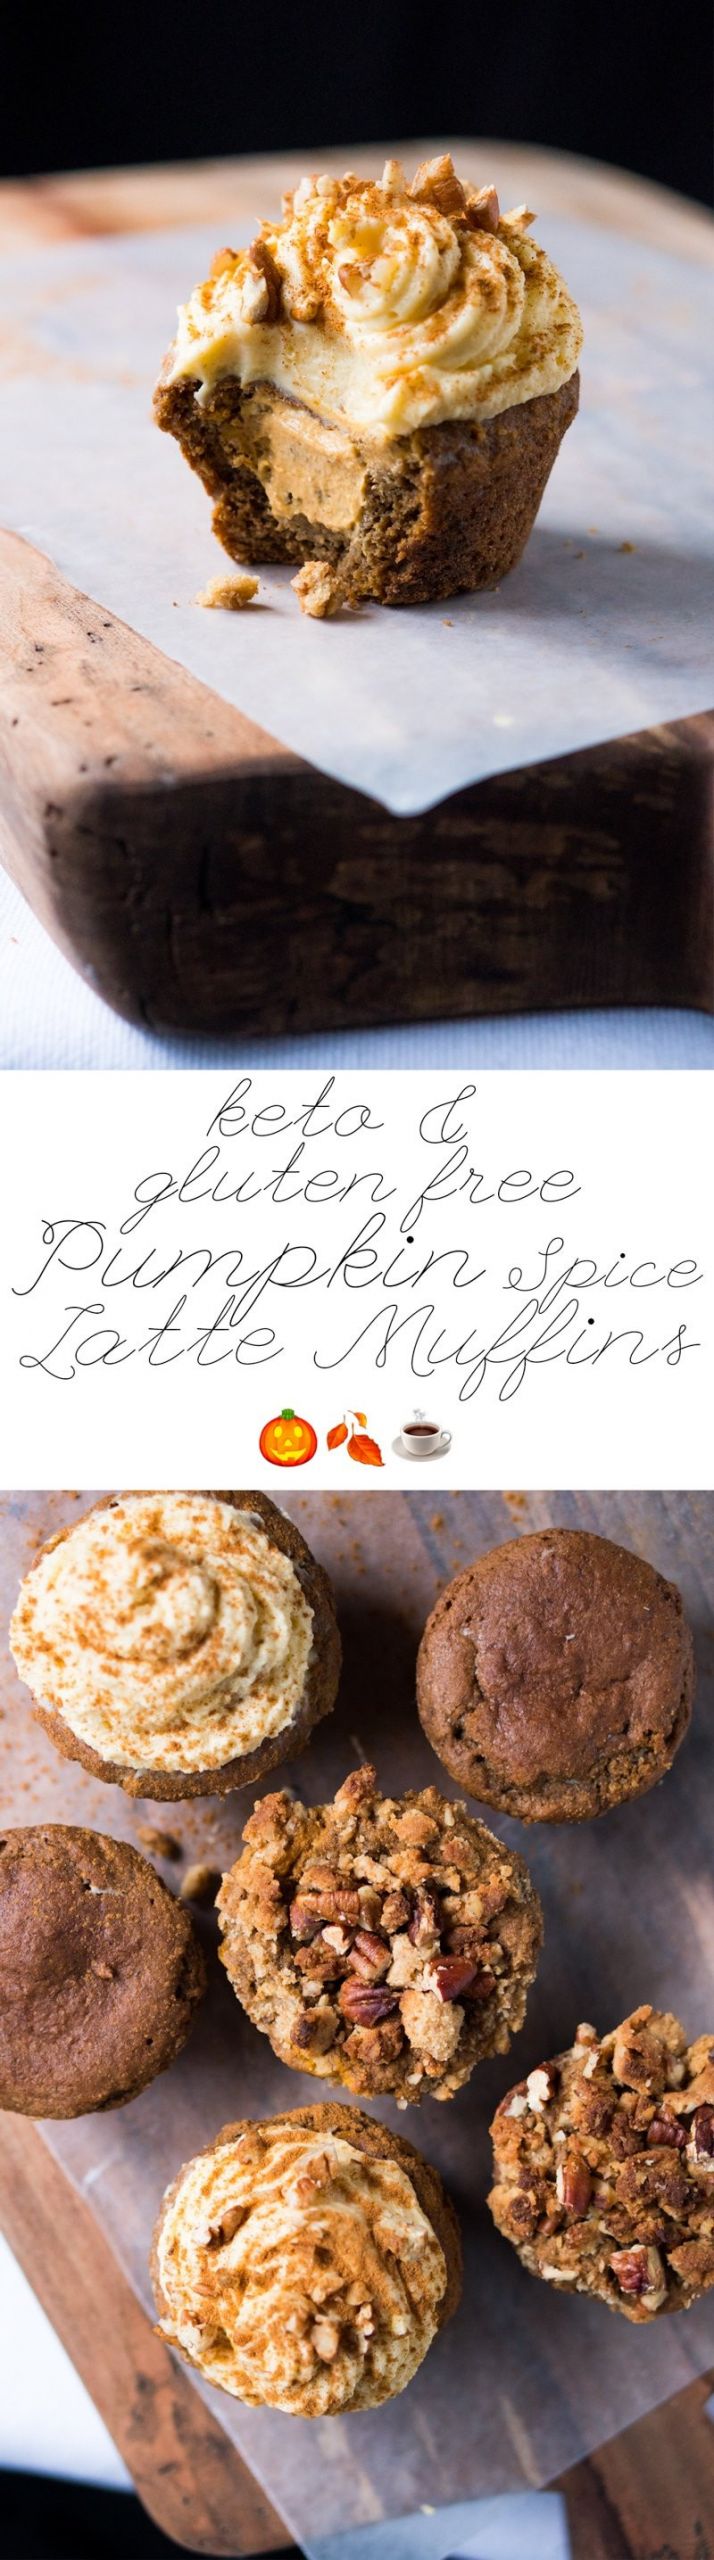 Dairy Free Keto Muffins
 Gluten Free & Keto Pumpkin Spice Latte Muffins 🎃🍂☕ 2g net